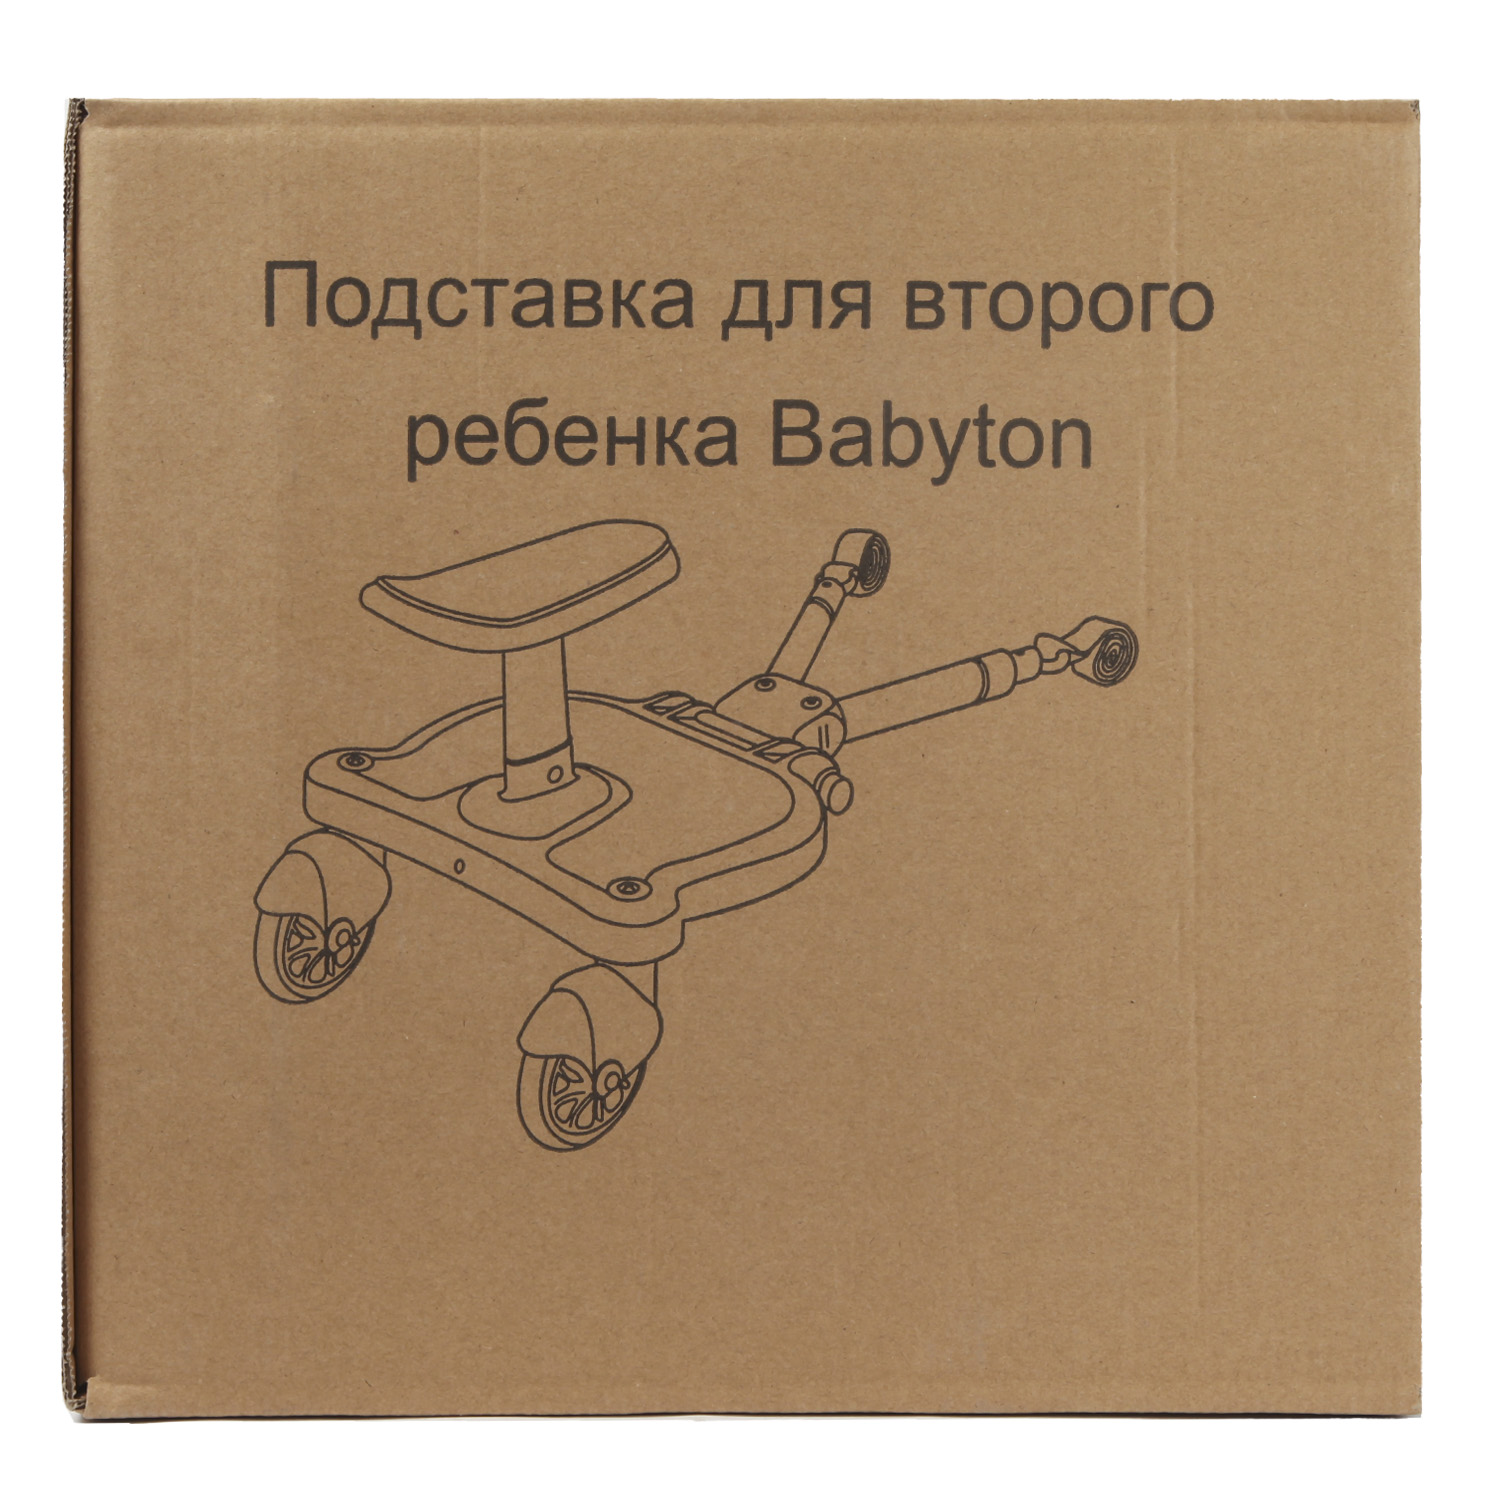 Подставка для второго ребенка Babyton CE-TB002 - фото 17